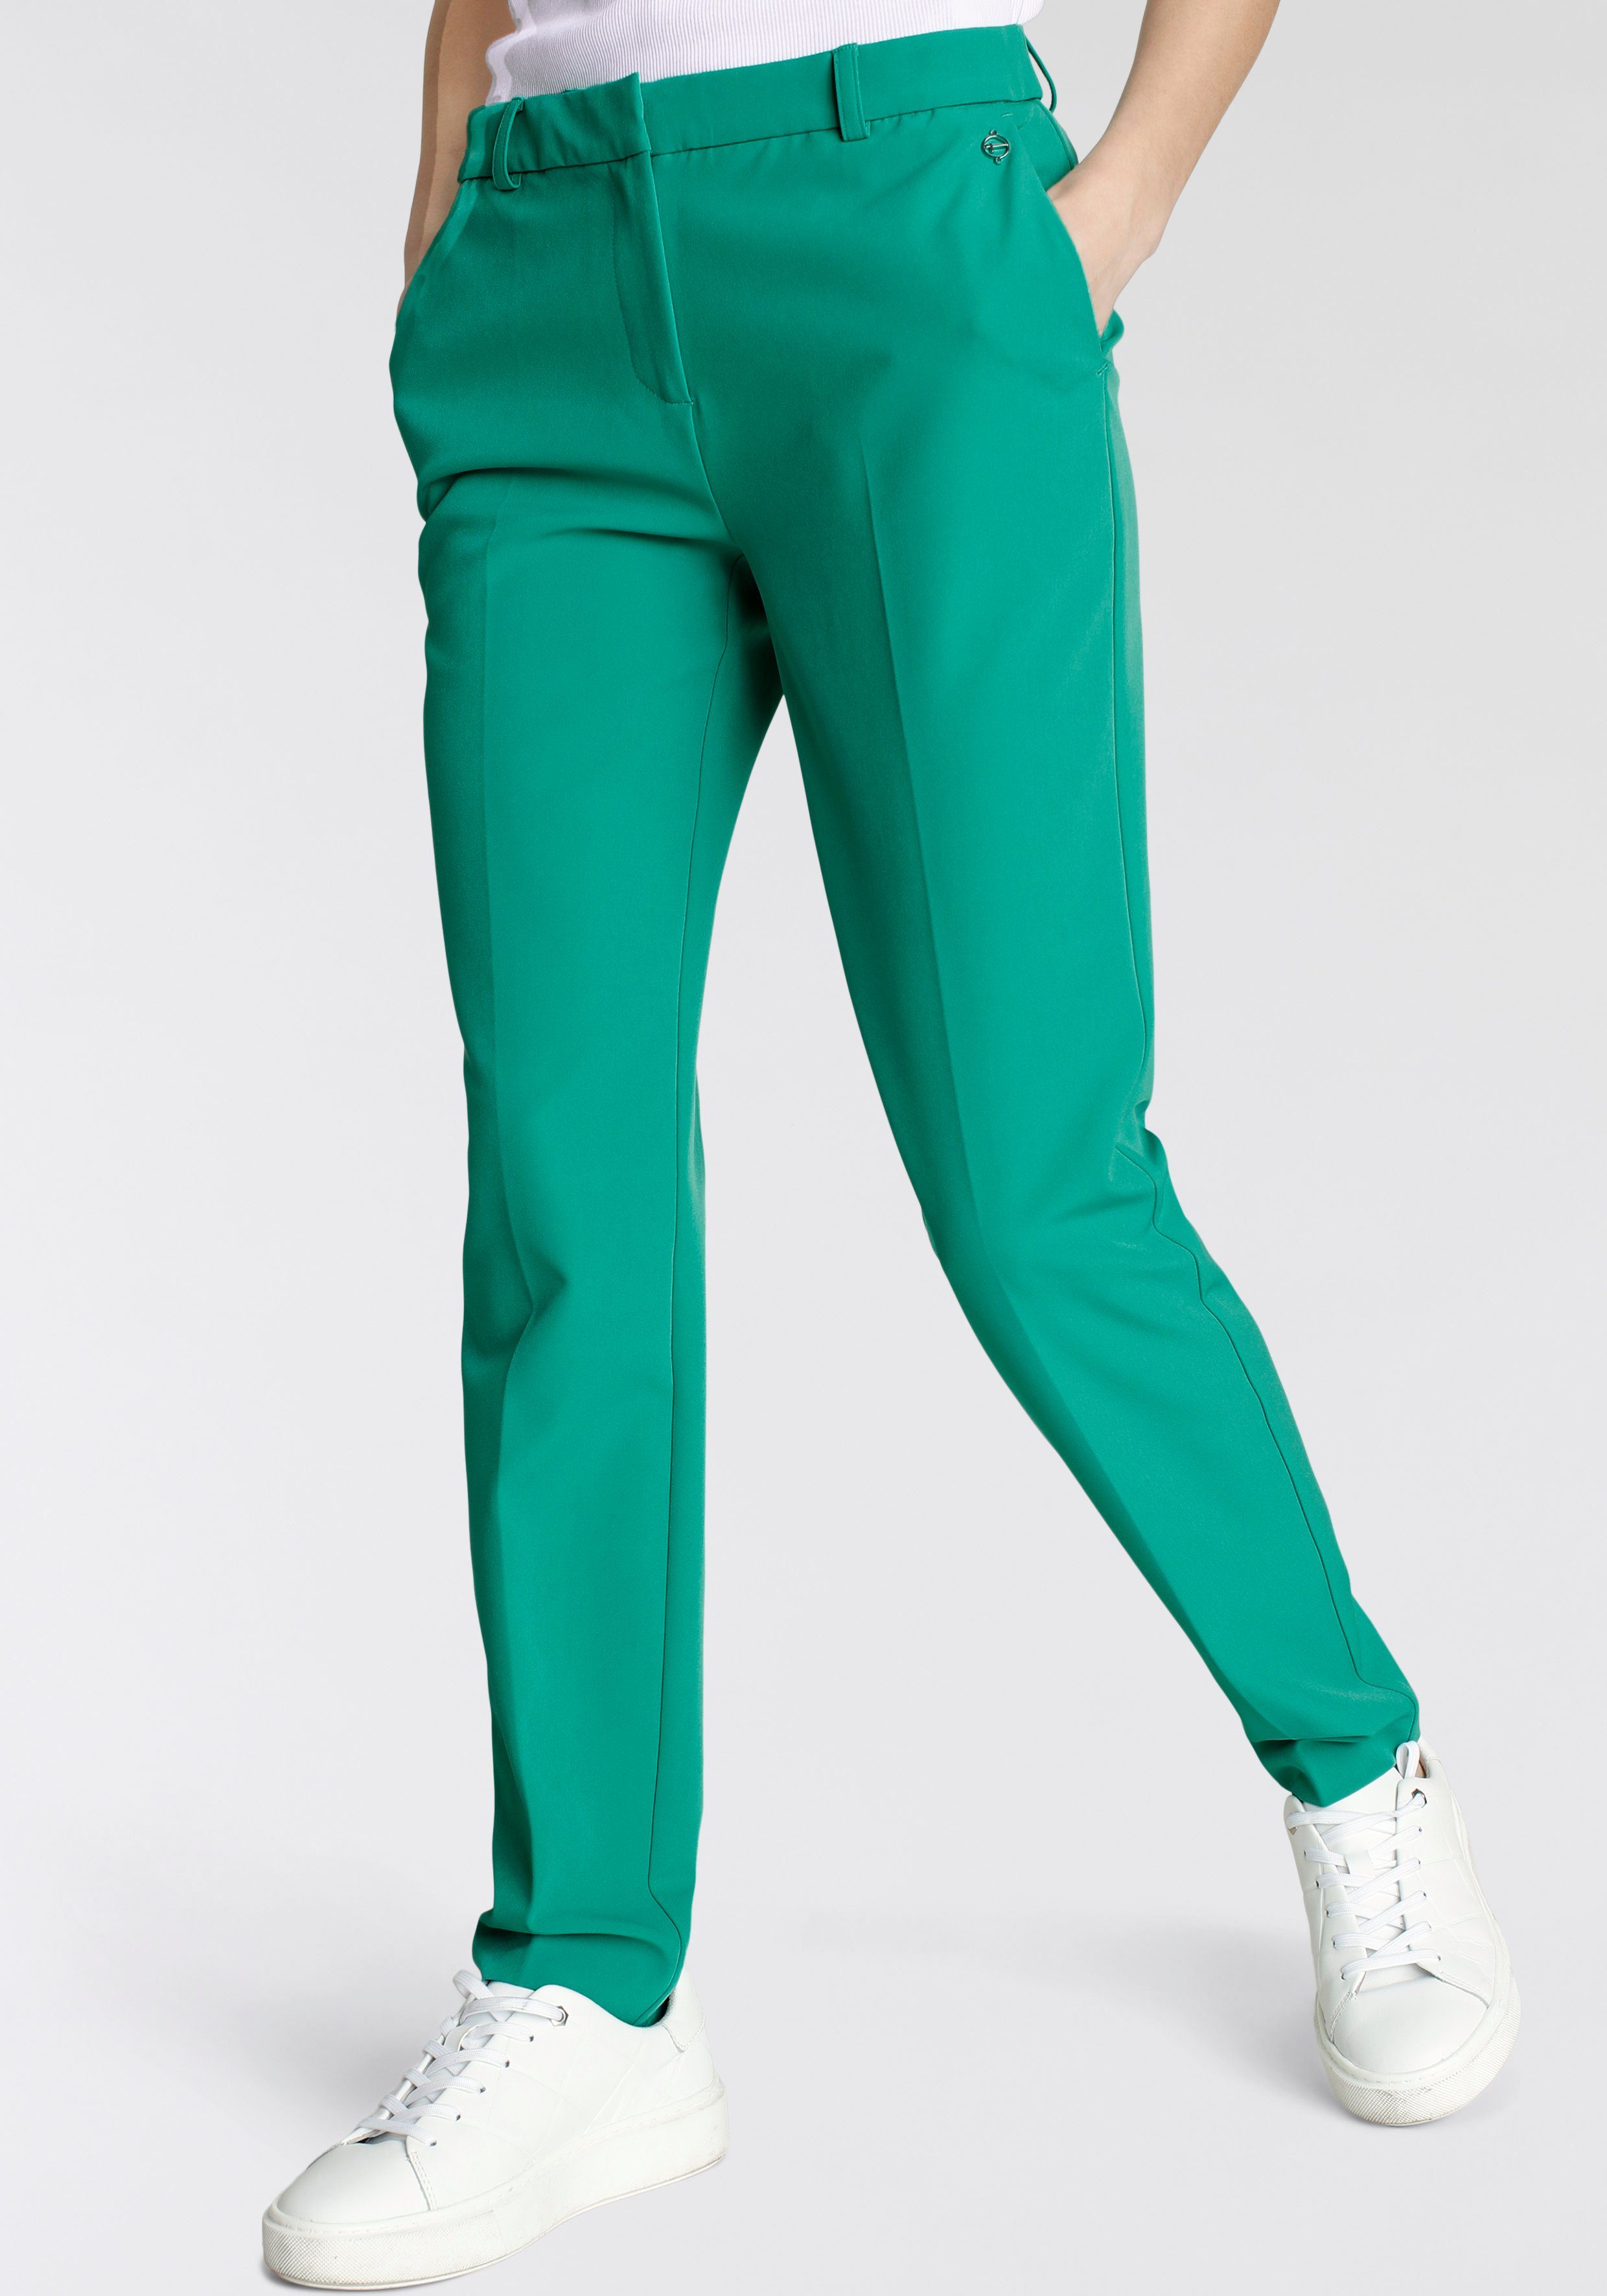 Tamaris Anzughose in Trendfarben grün (Hose aus nachhaltigem Material') | Stretchhosen